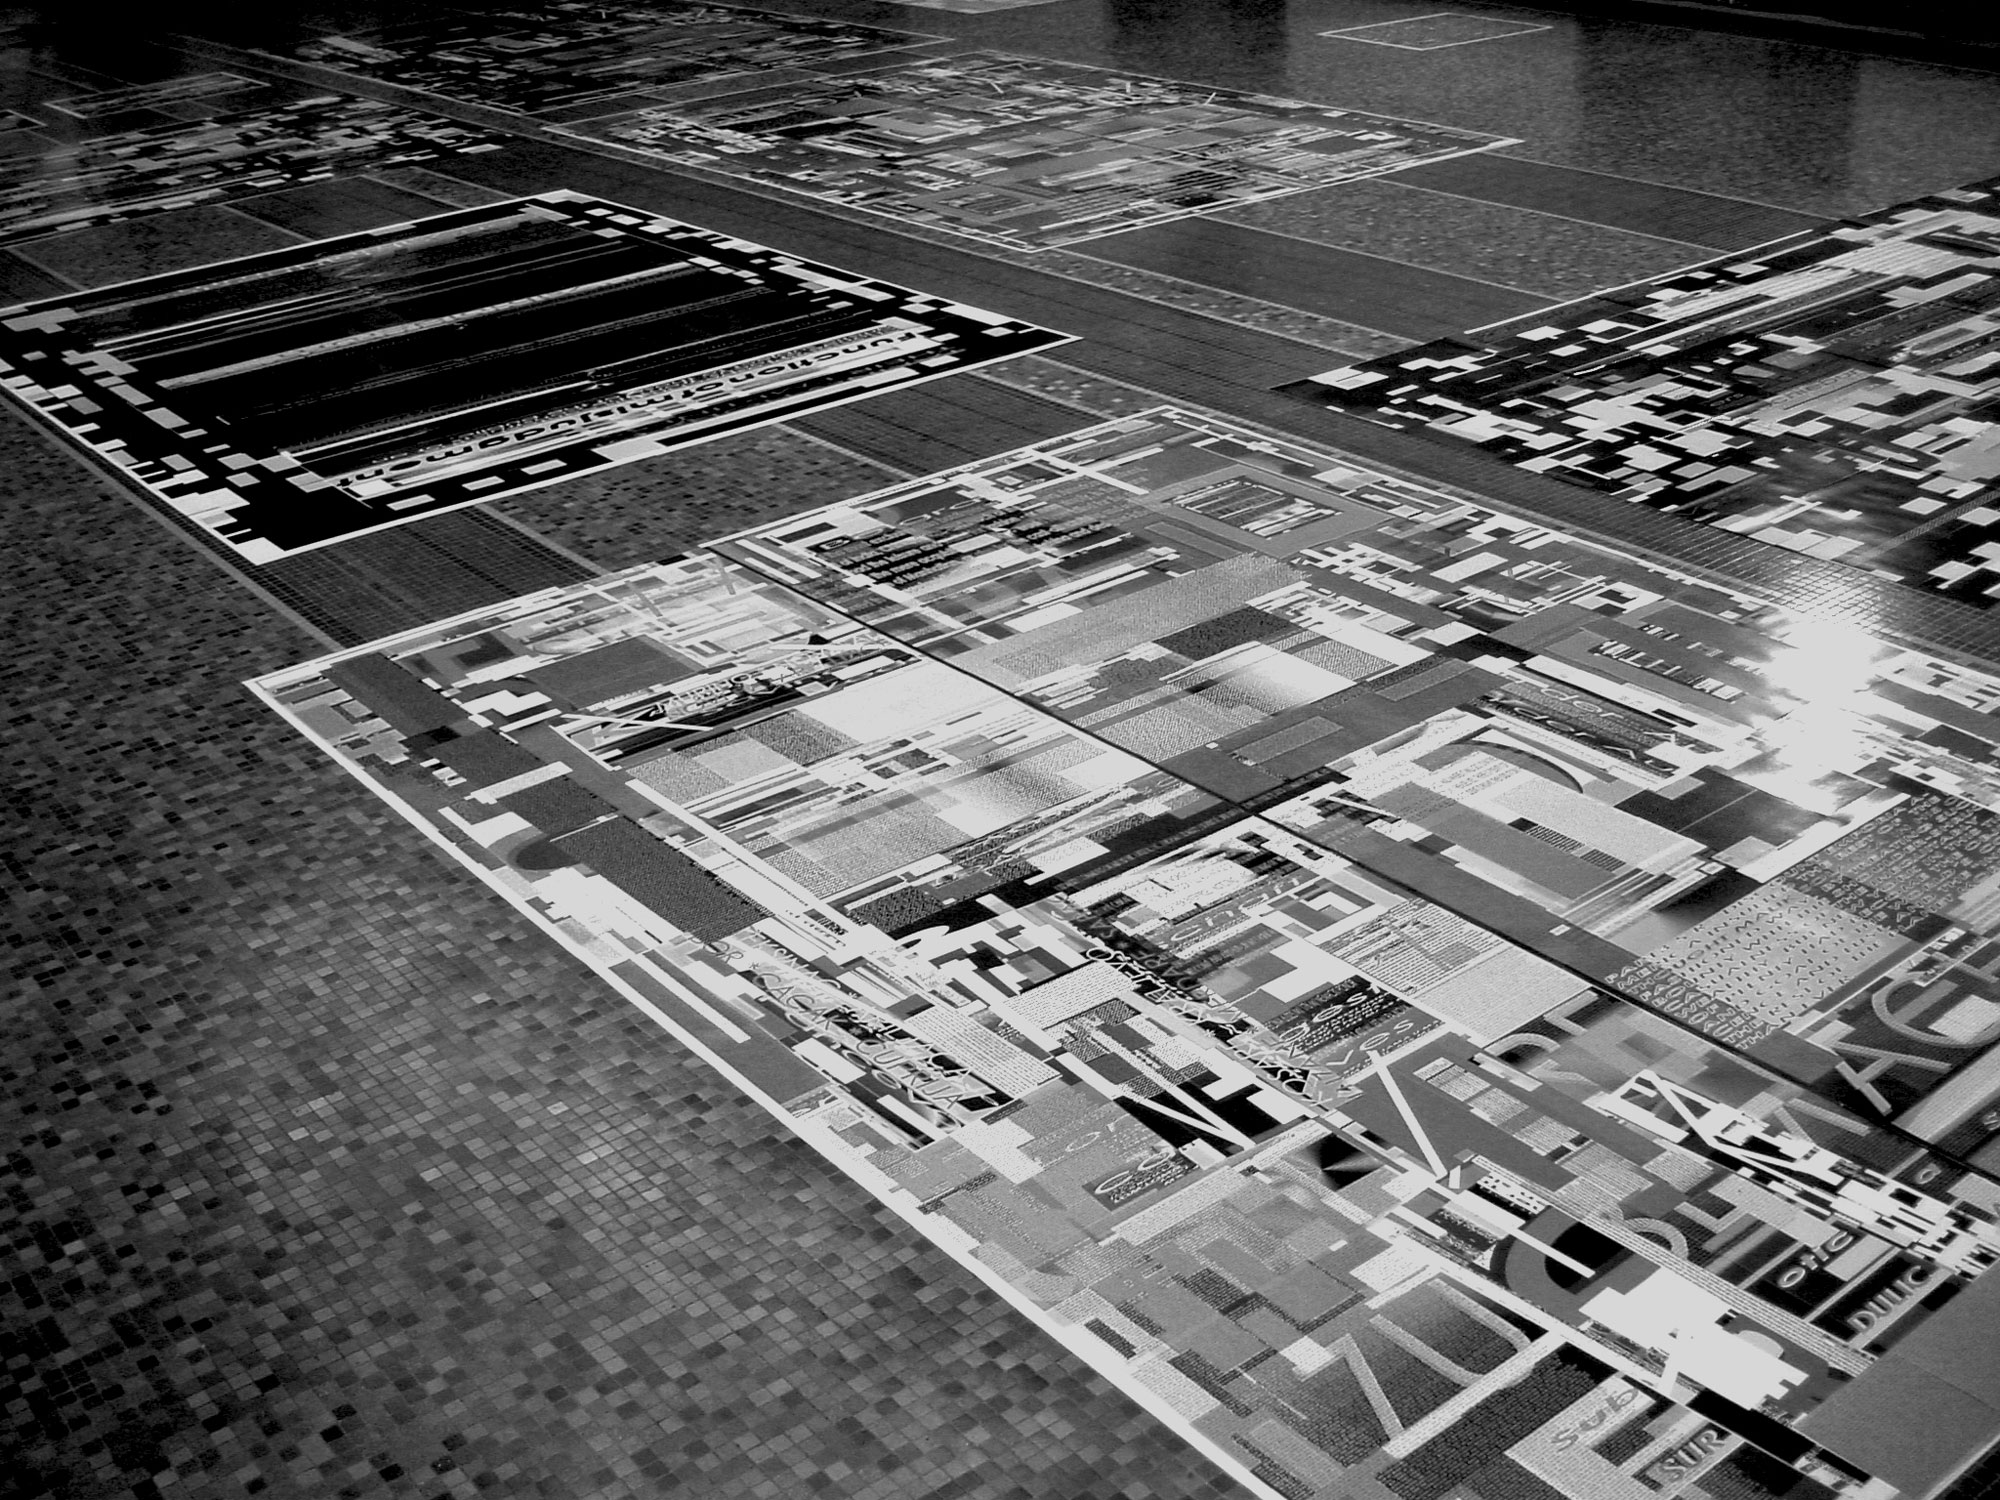 Herwig Steiner (1956L) / Textfields/Battlefields Discourses – Yugoslavia / Floorinstallation / computergenerierte Prints auf Papier / Muzej Istorije Jugoslavije, Beograd/SRB / 2002